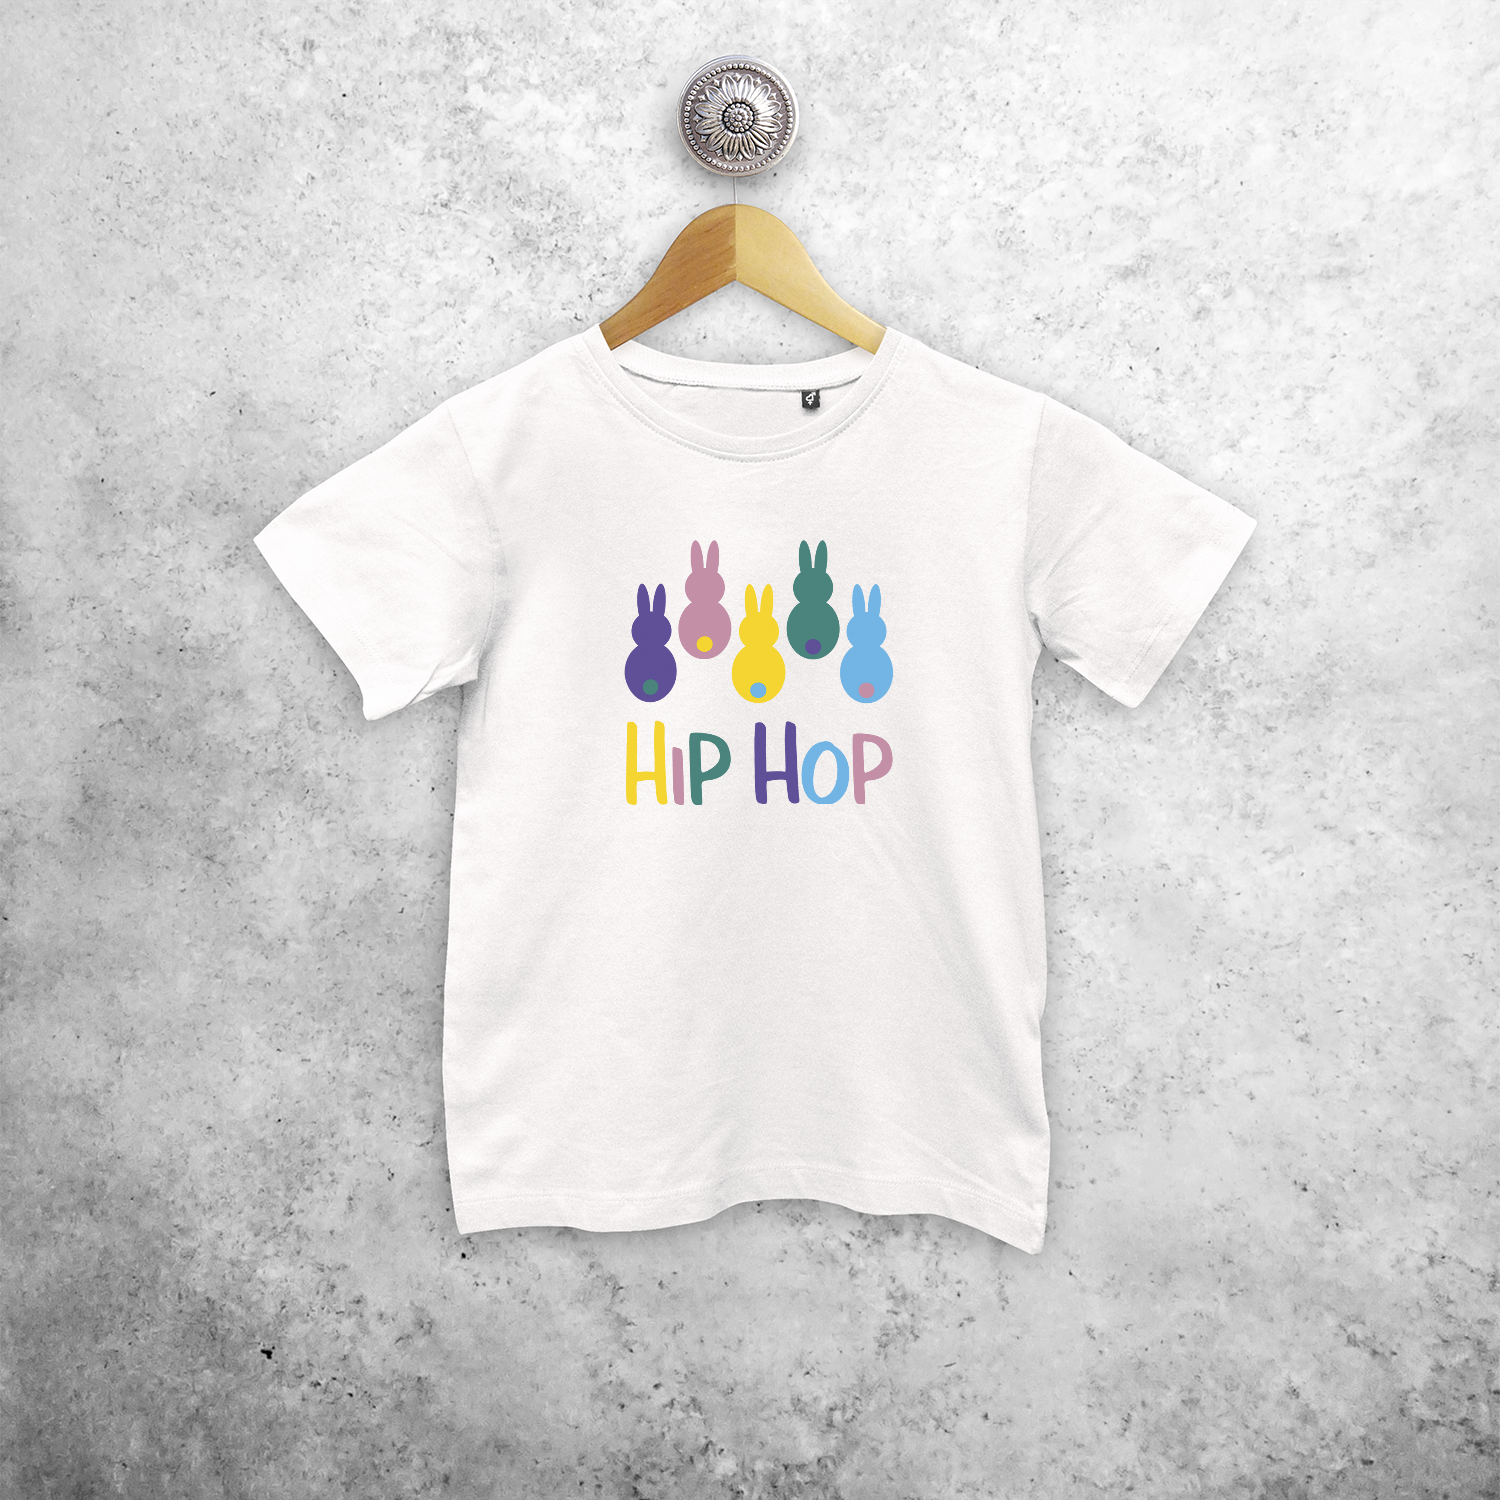 'Hip hop' bunnies kids shortsleeve shirt